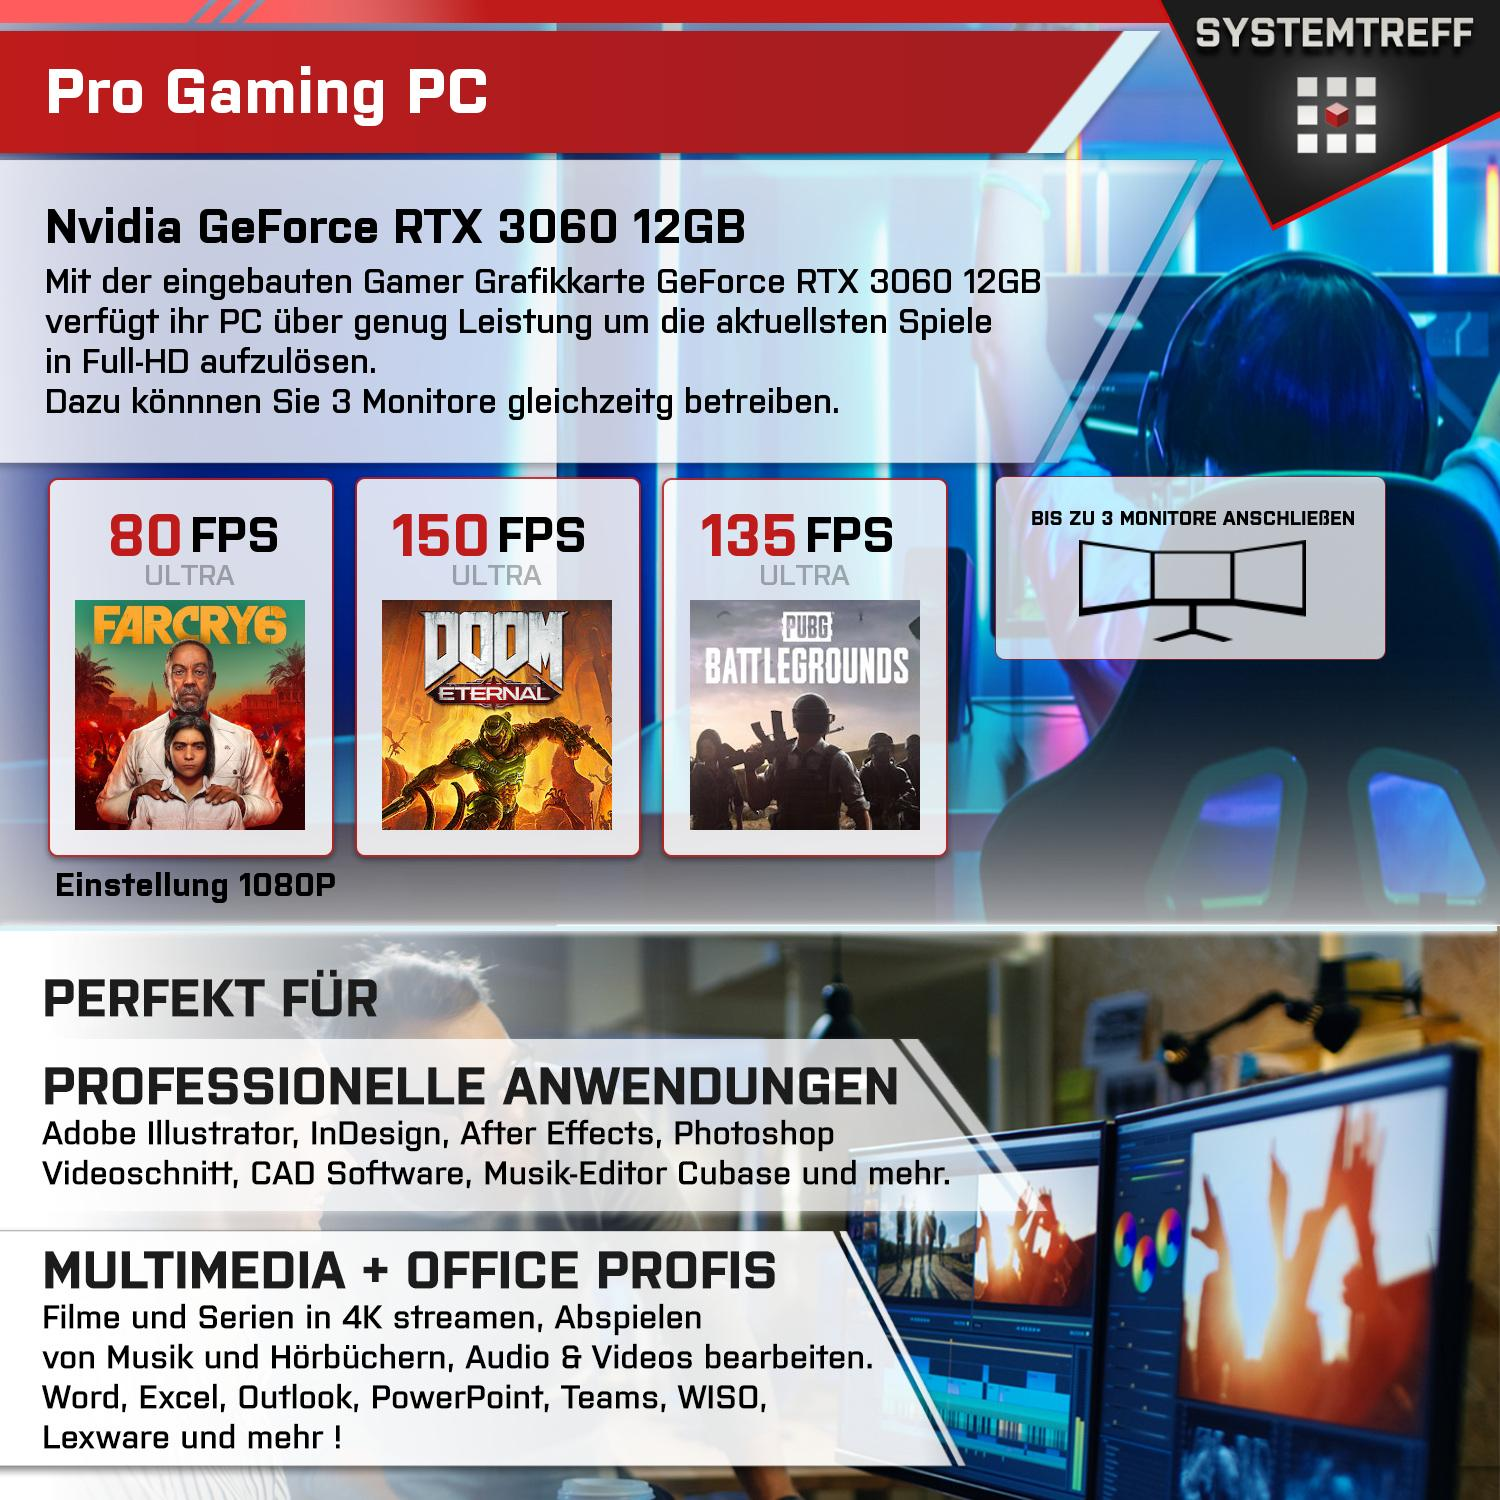 SYSTEMTREFF Gaming Komplett AMD 7 12GB GB Nvidia GDDR6, Prozessor, 1000 RAM, Komplett GeForce mit 12 3060 32 5800X3D, GB GB mSSD, 5800X3D RTX Ryzen PC